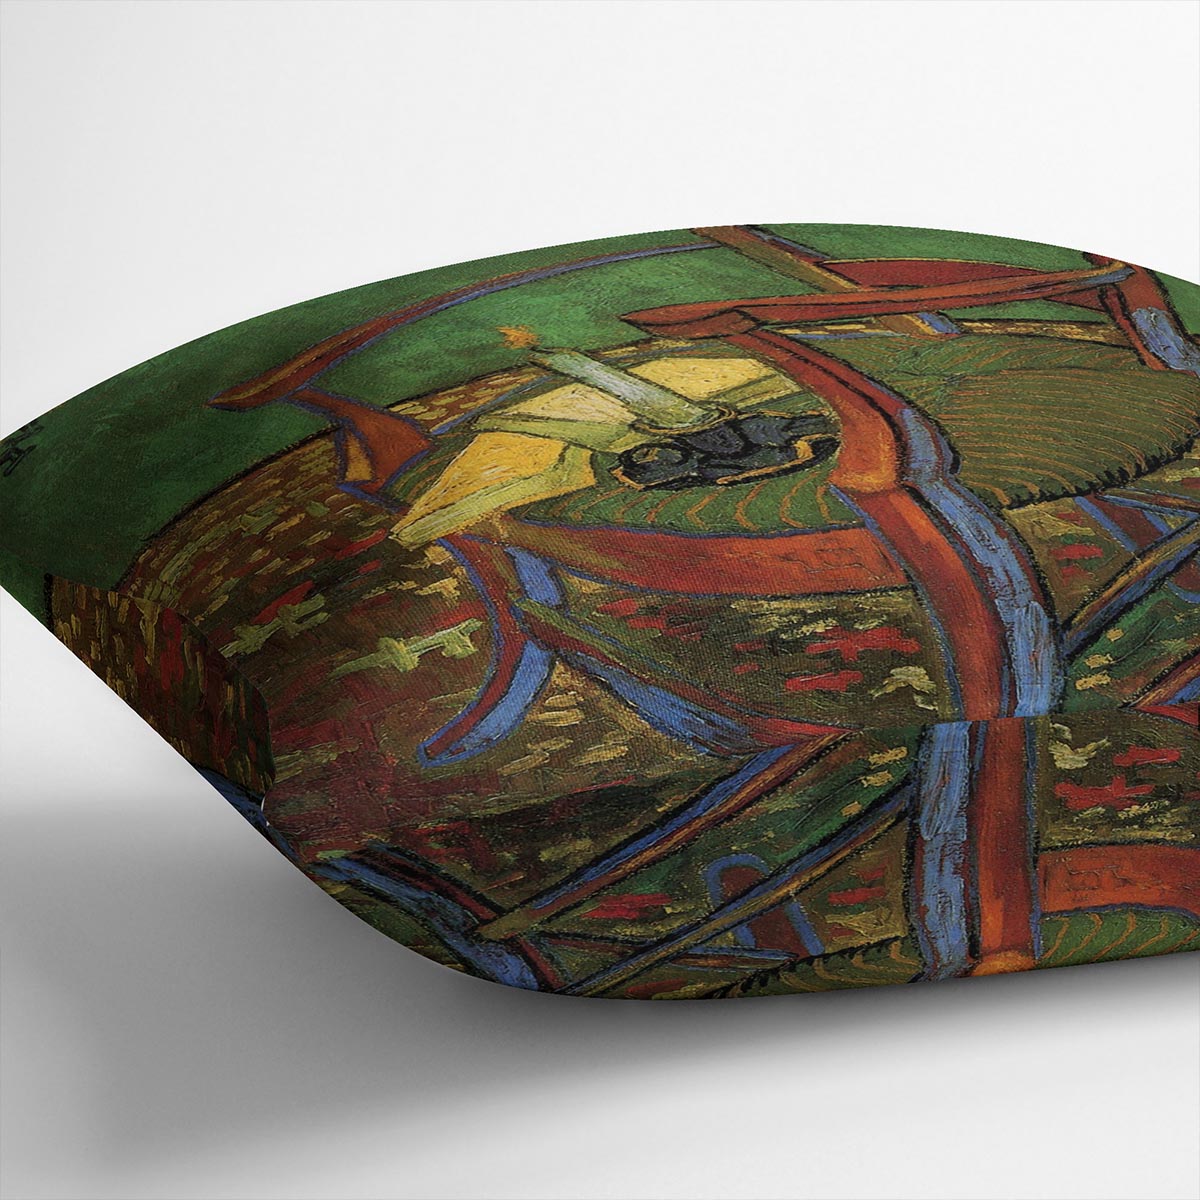 Paul Gauguin's Armchair by Van Gogh Cushion